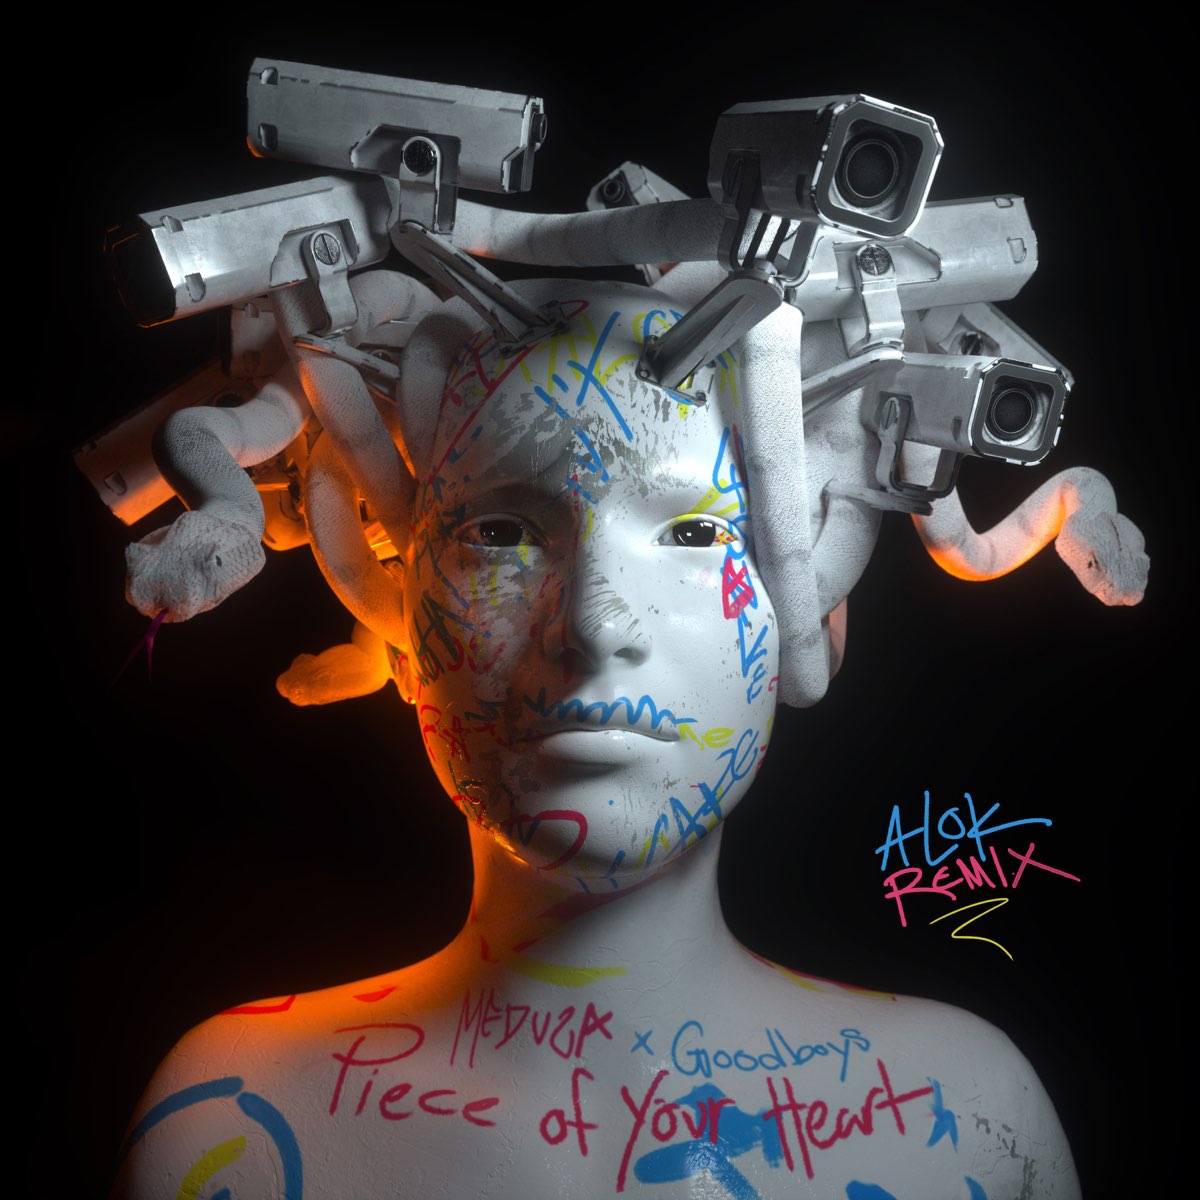 Piece of Your Heart (Feat. Alok & Goodboys) [Alok Remix] (tradução) -  Meduza - VAGALUME